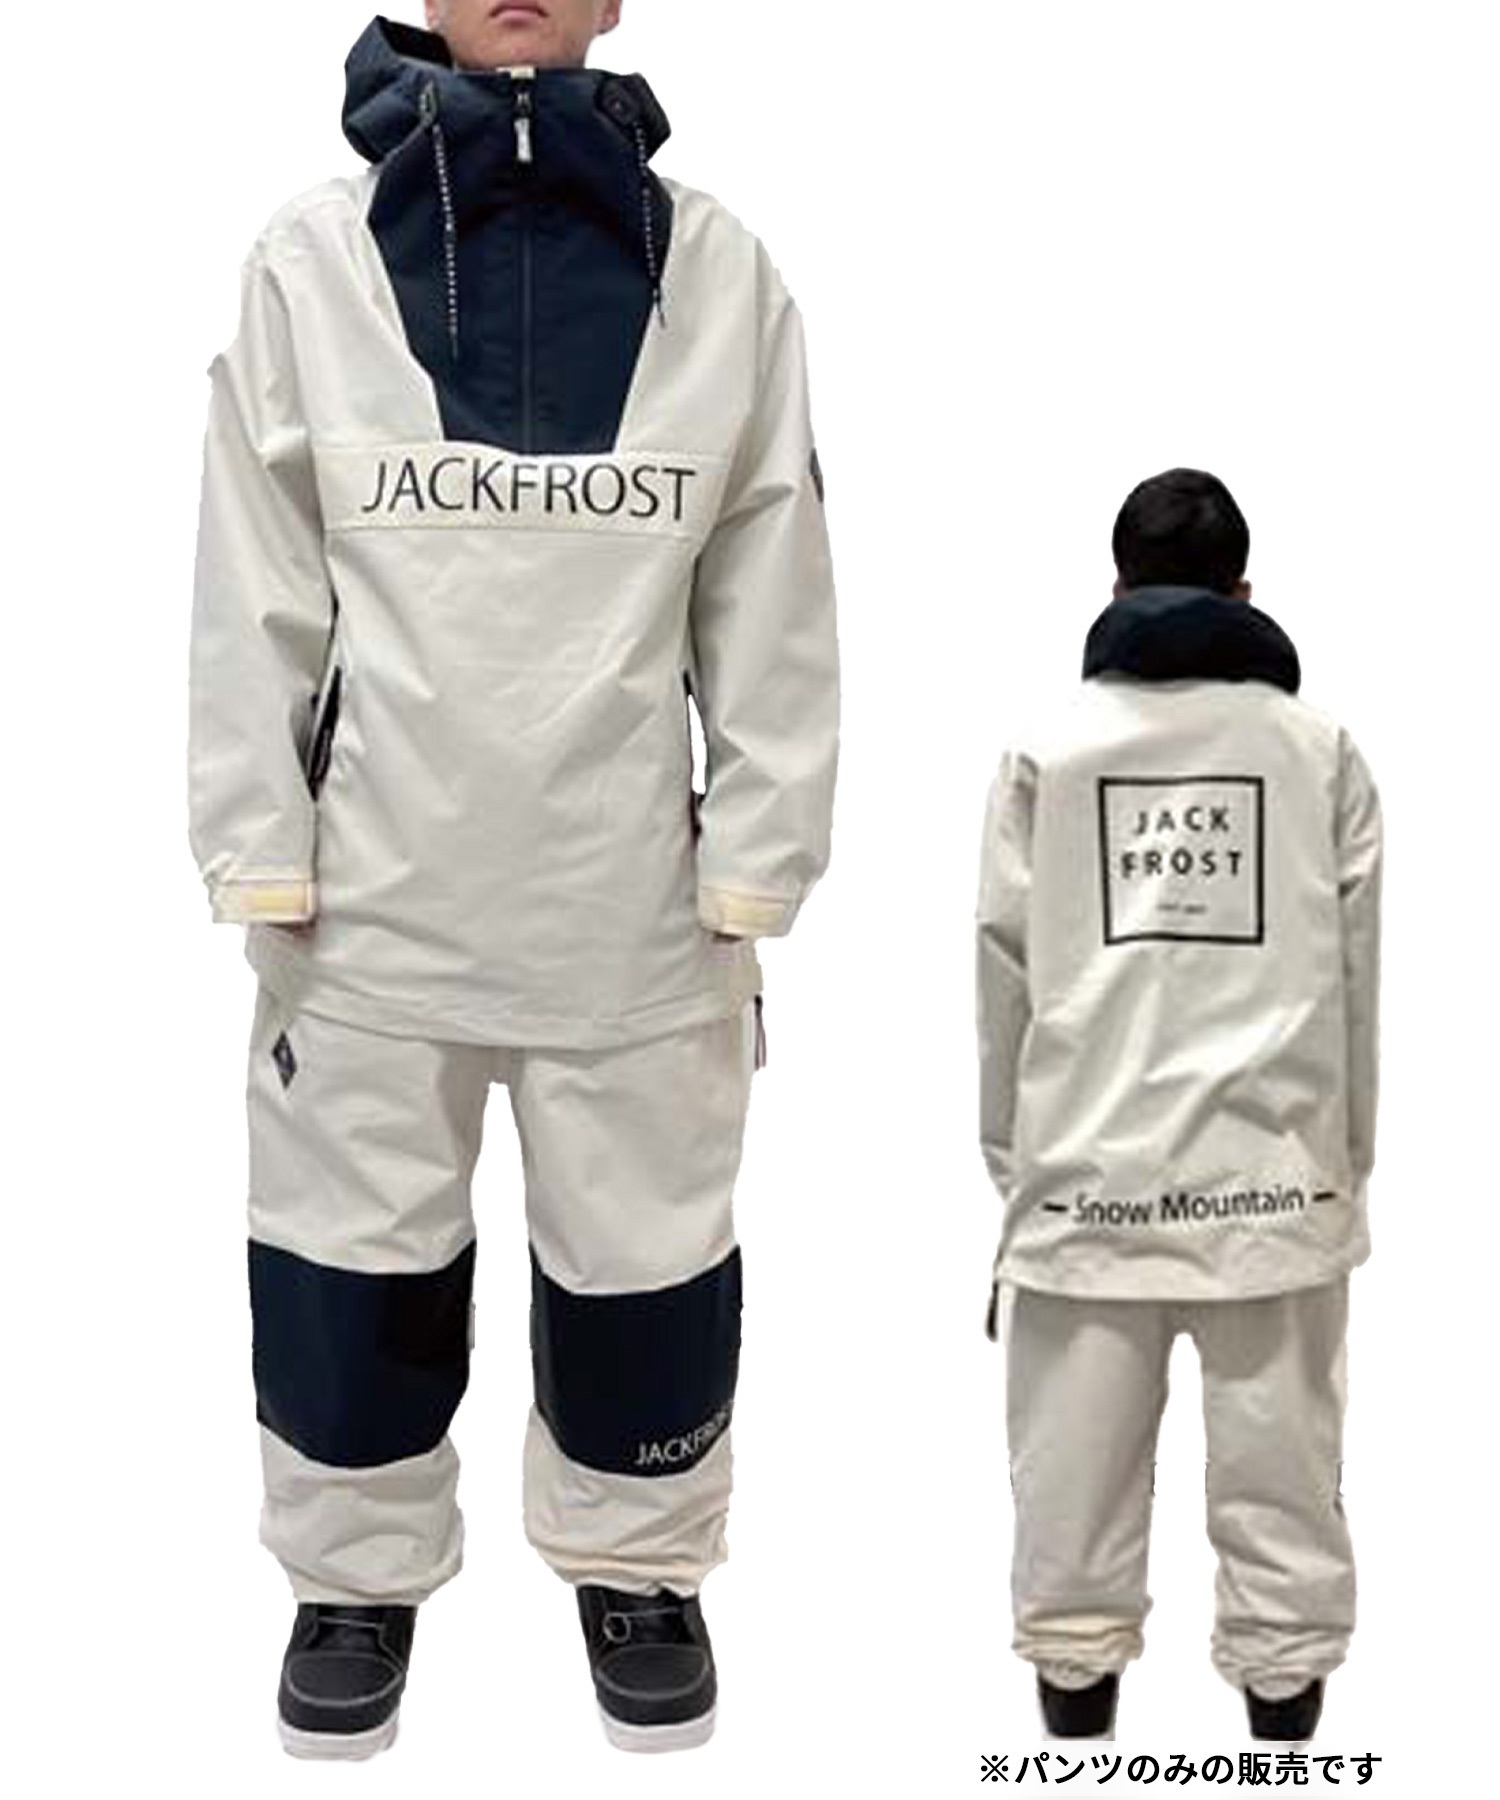 【早期購入/店頭受取対象外】JACK FROST ジャックフロスト スノーボード ウェア パンツ ユニセックス WIDE ムラサキスポーツ 24-25モデル LX D25(BLACK-S)